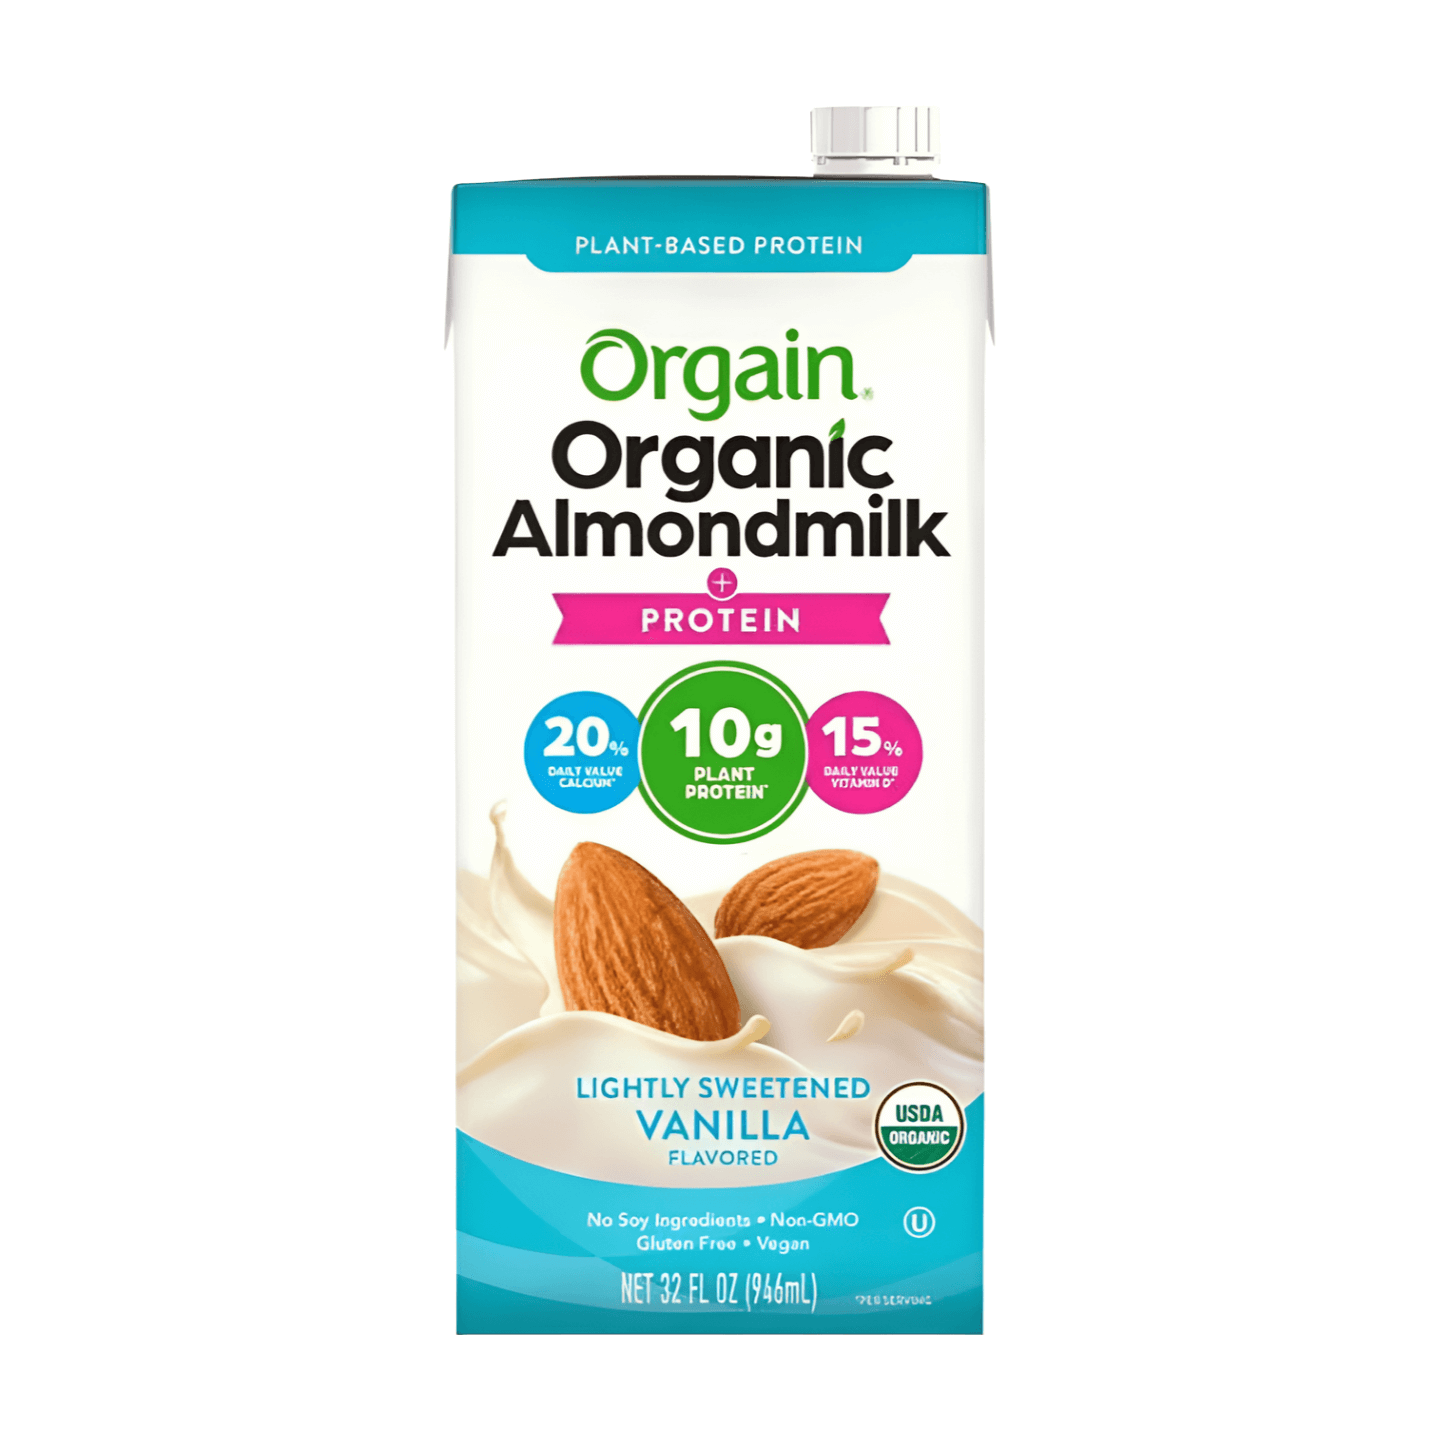 Orgain Organic Protein Almond Milk Lightly Sweetened Vanilla